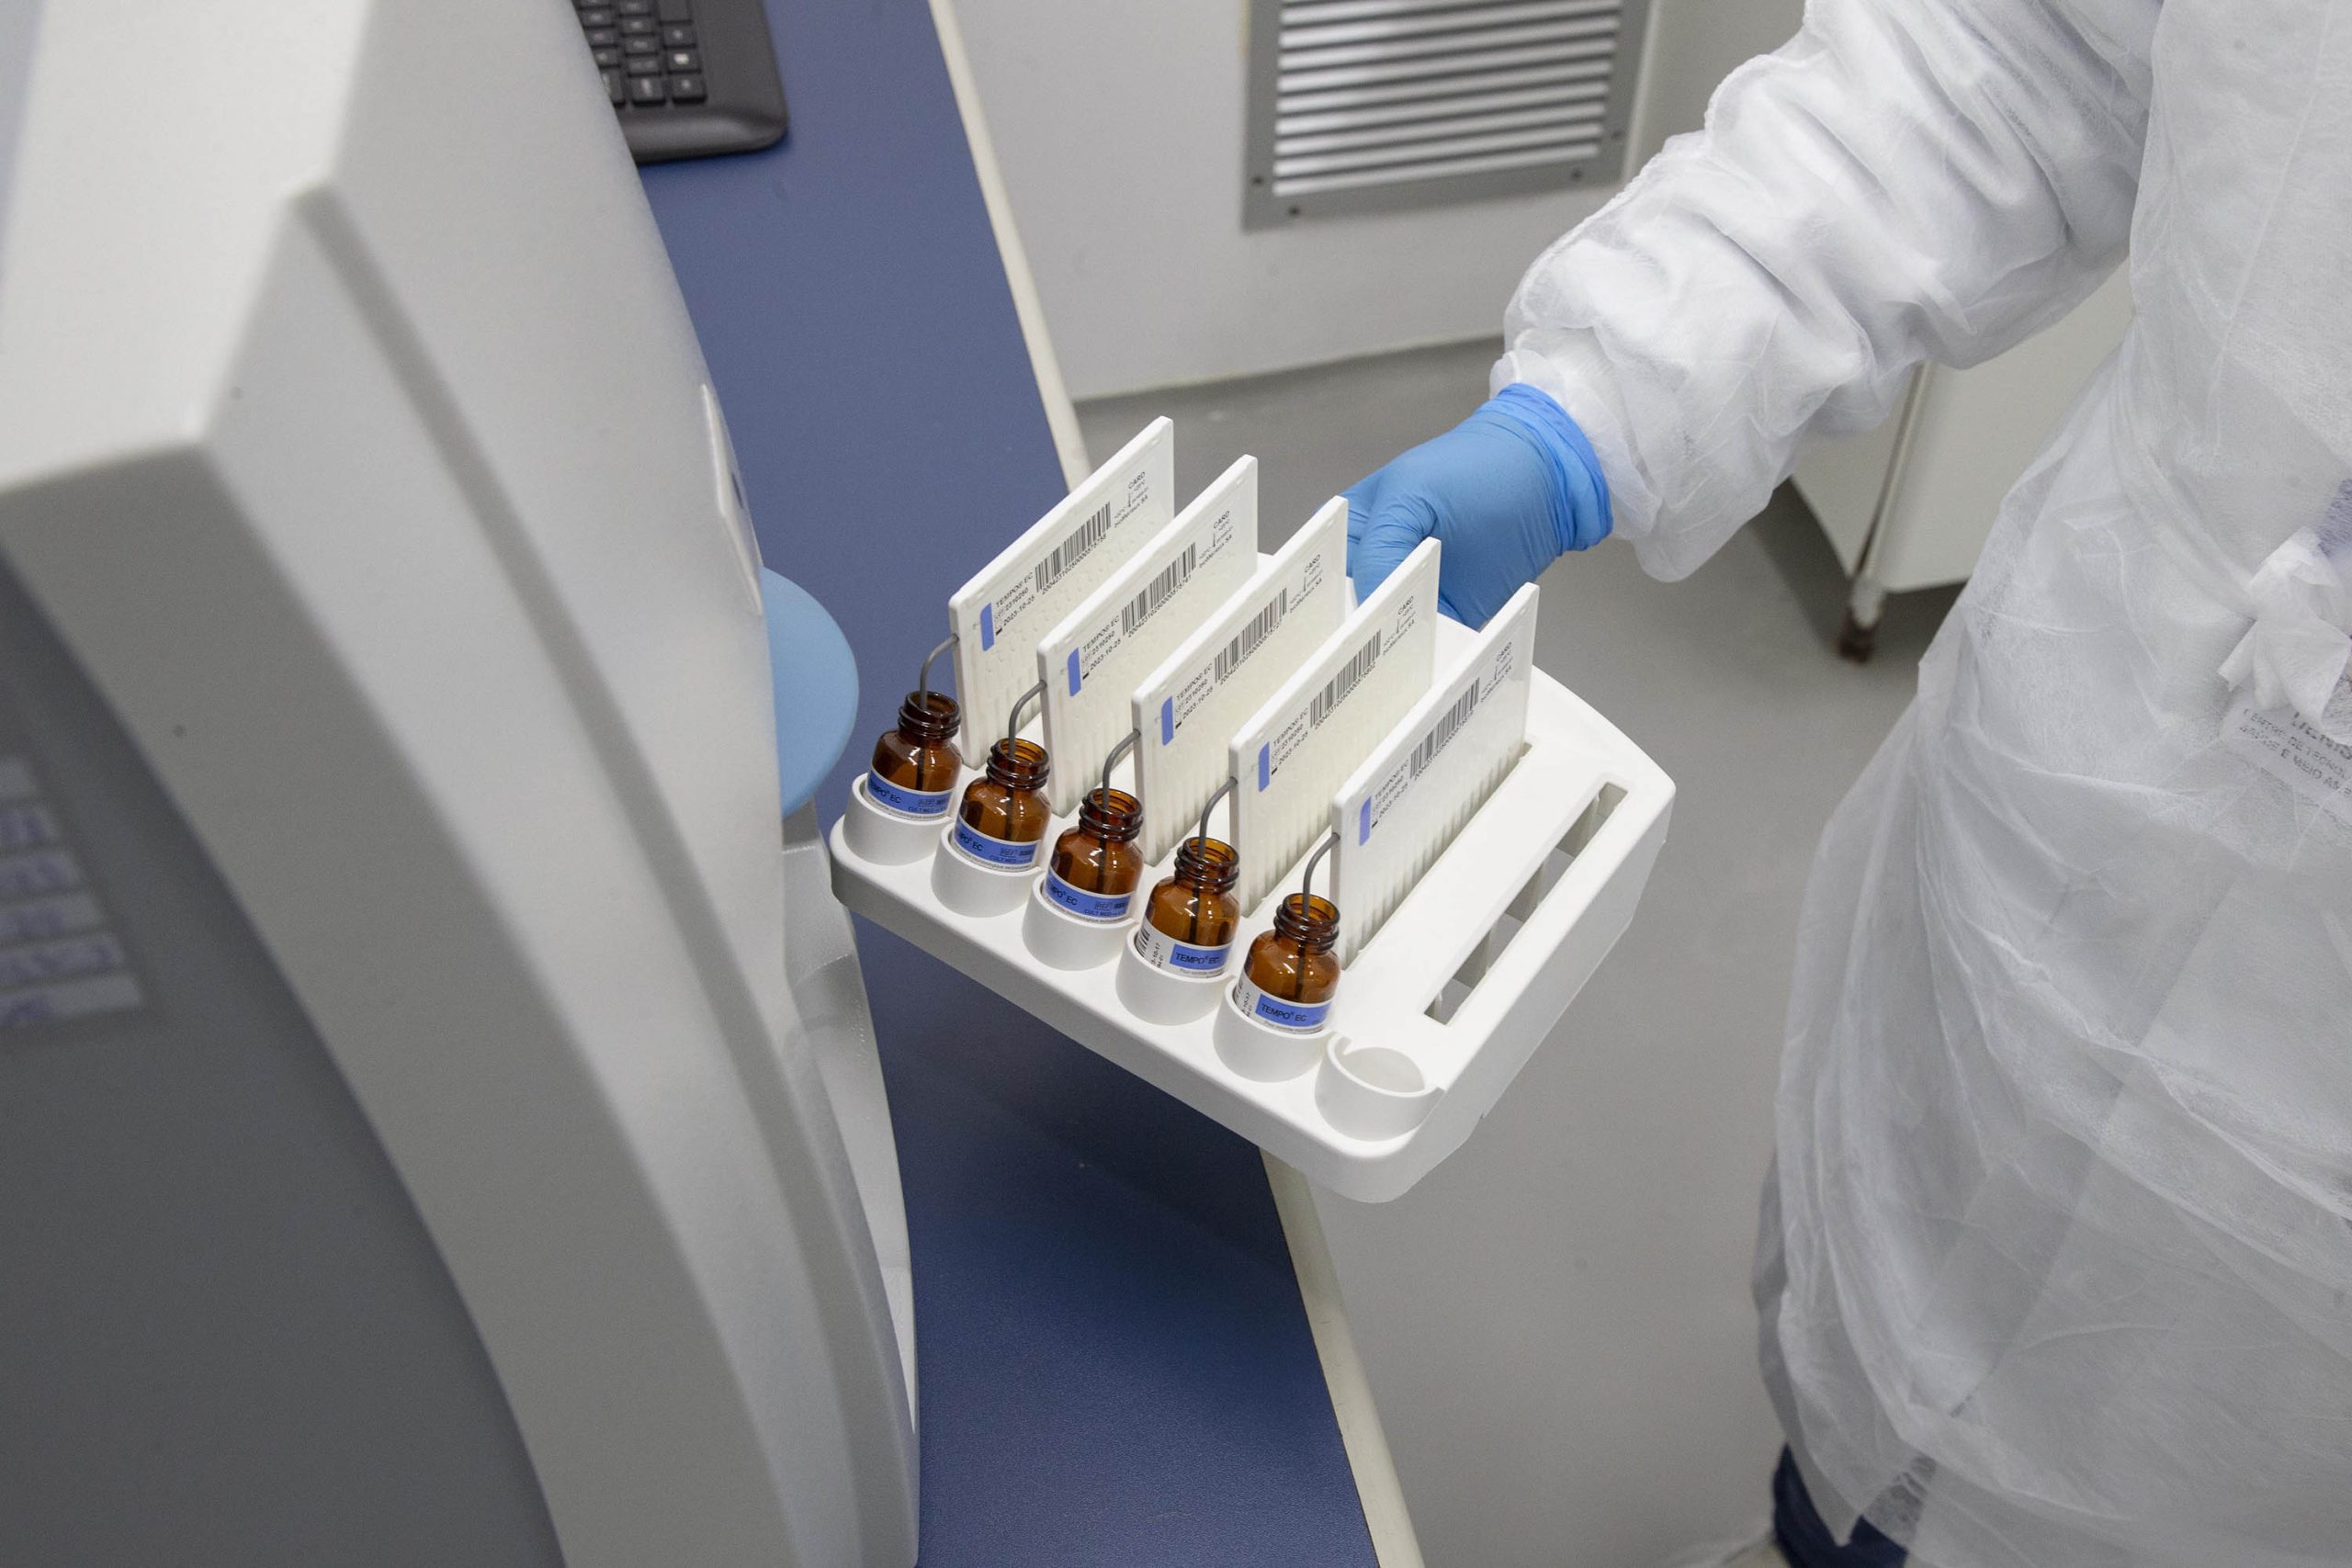 Tecpar implanta novos ensaios que reduzem o tempo de análise laboratorial de alimentos